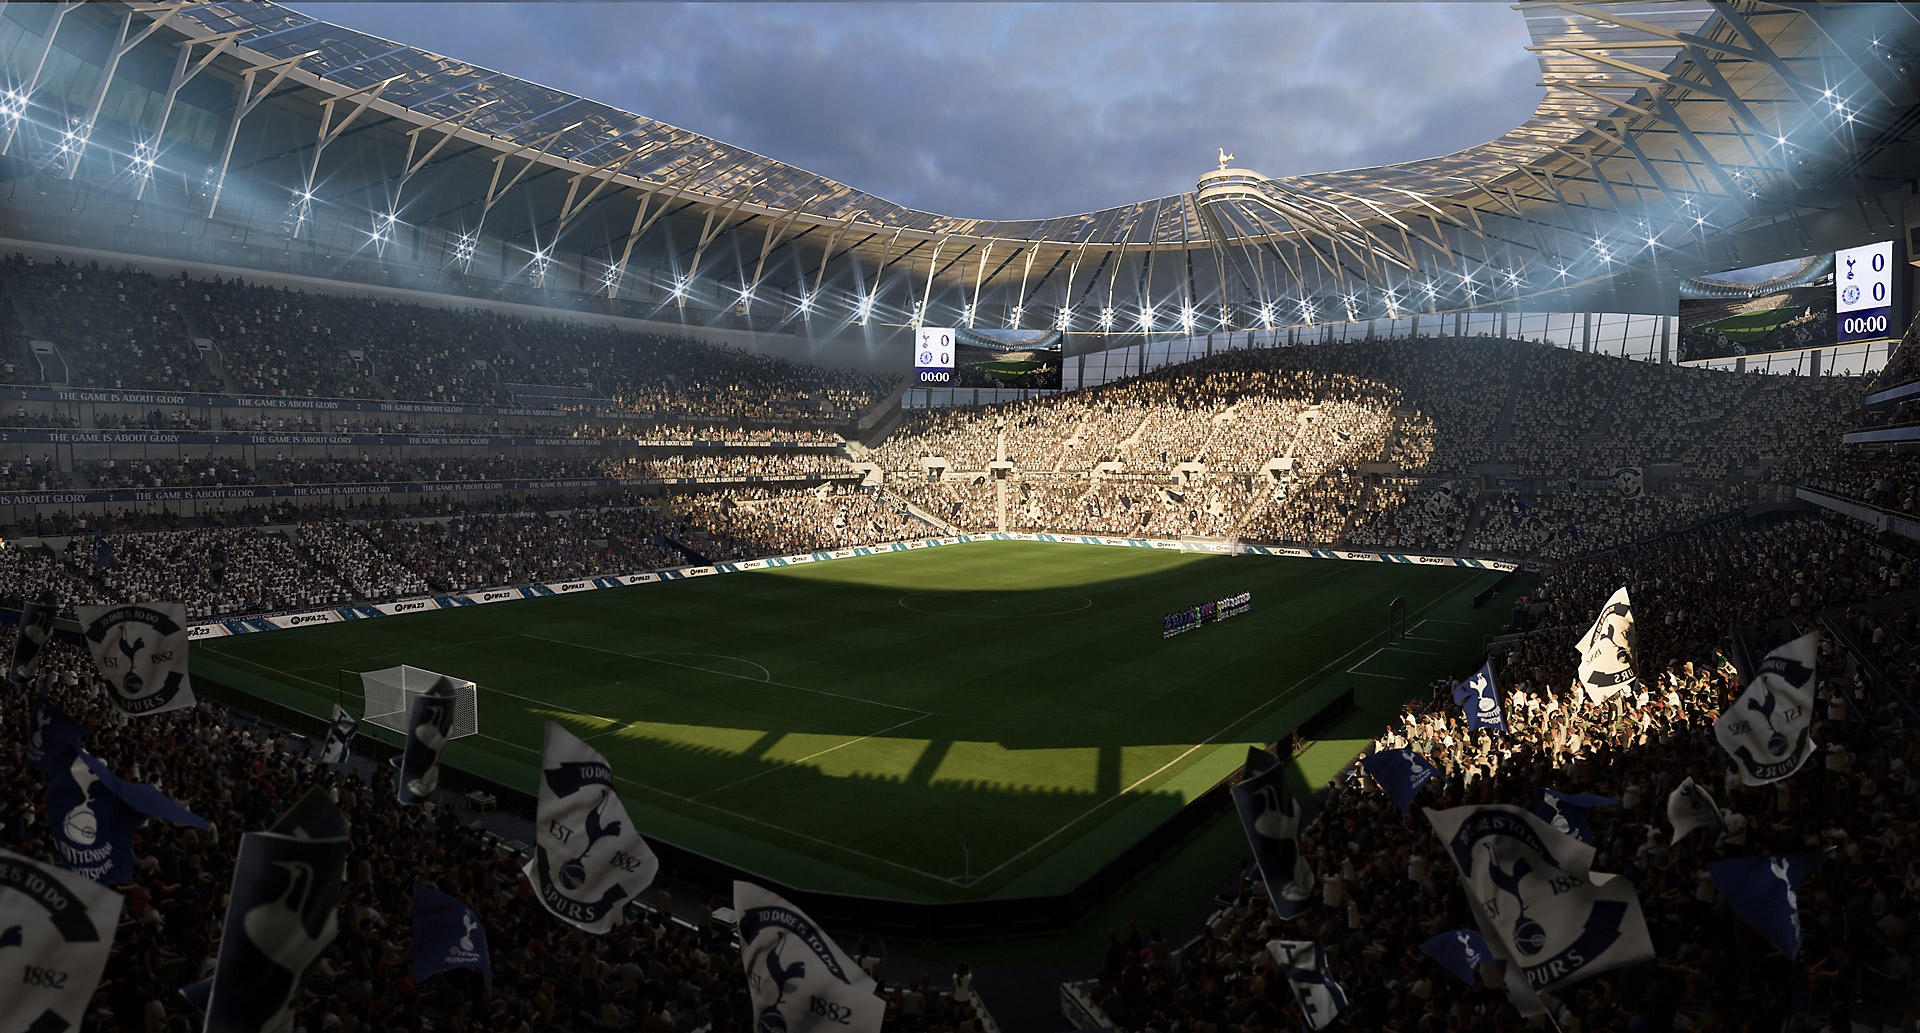 Zrzut ekranu z gry EA Sports FIFA 23 pokazujący stadion piłkarski